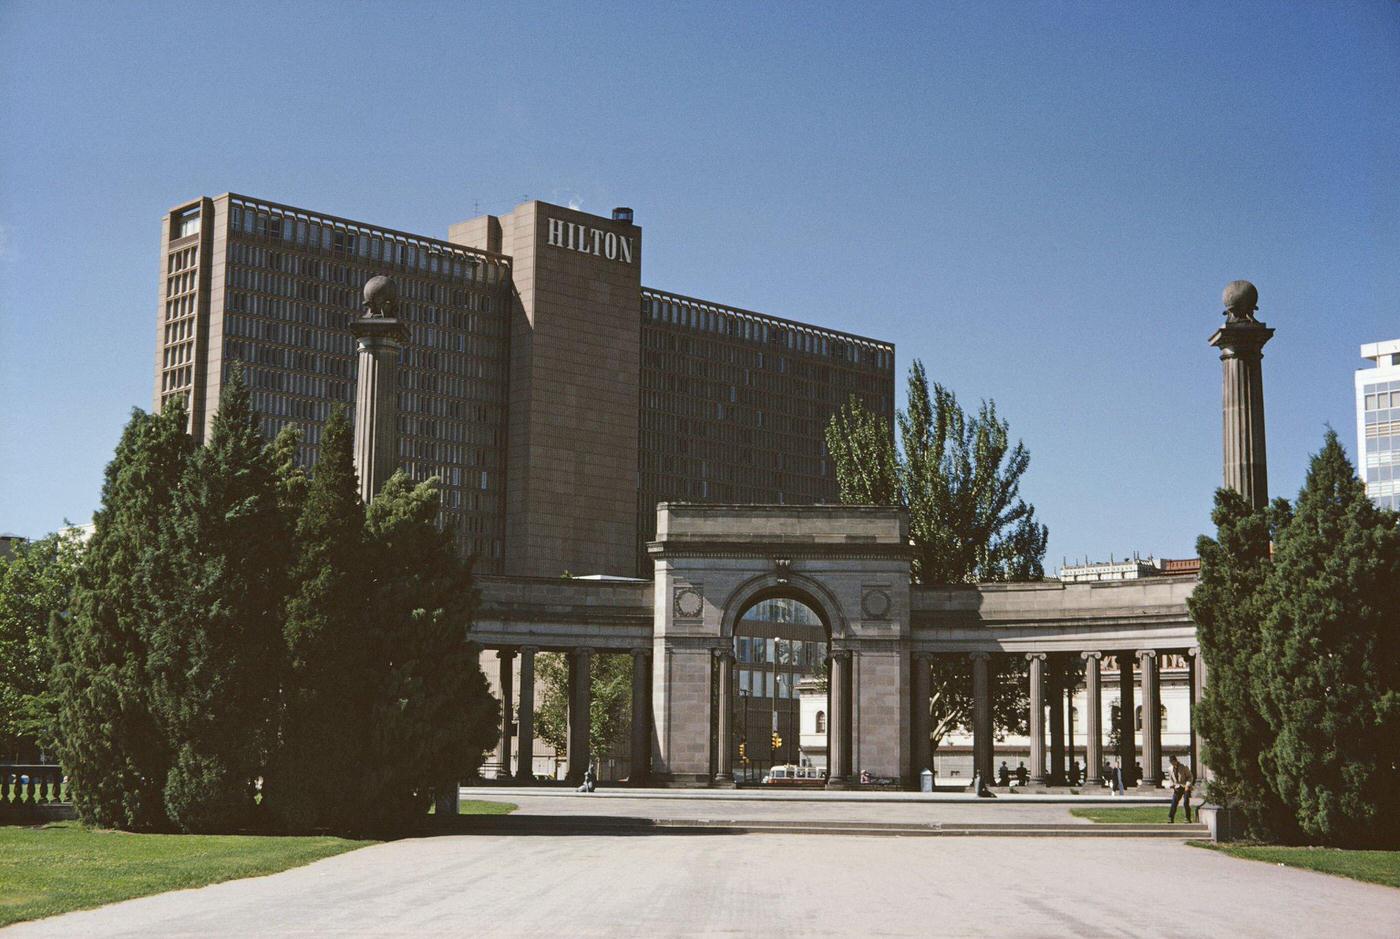 The Hilton Hotel viewed from Denver Civic Center, Denver, Colorado, 1962.